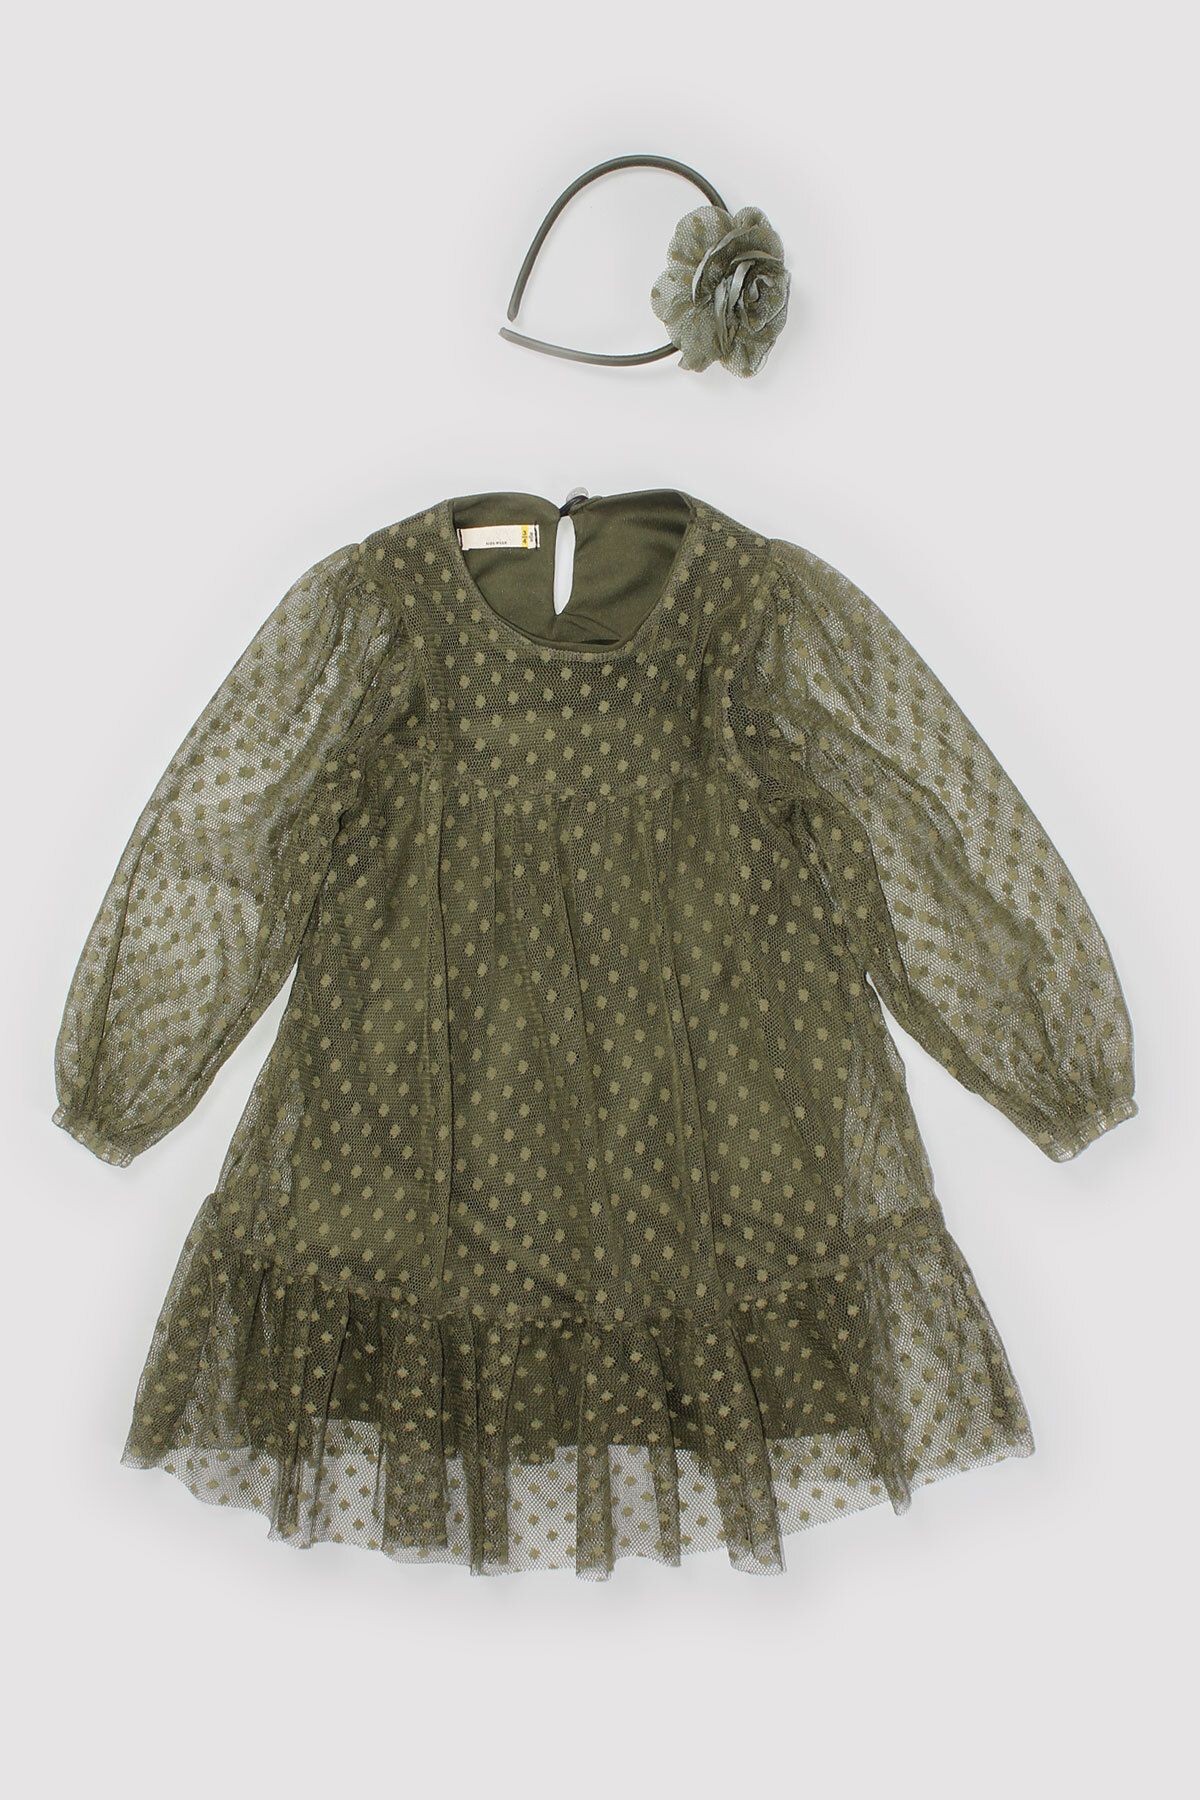 Peki 5 Al 4 Öde Mevsimlik Kız Çocuk Tül Puantiyeli Altı Etekli Taçlı Ikili Elbise 14680